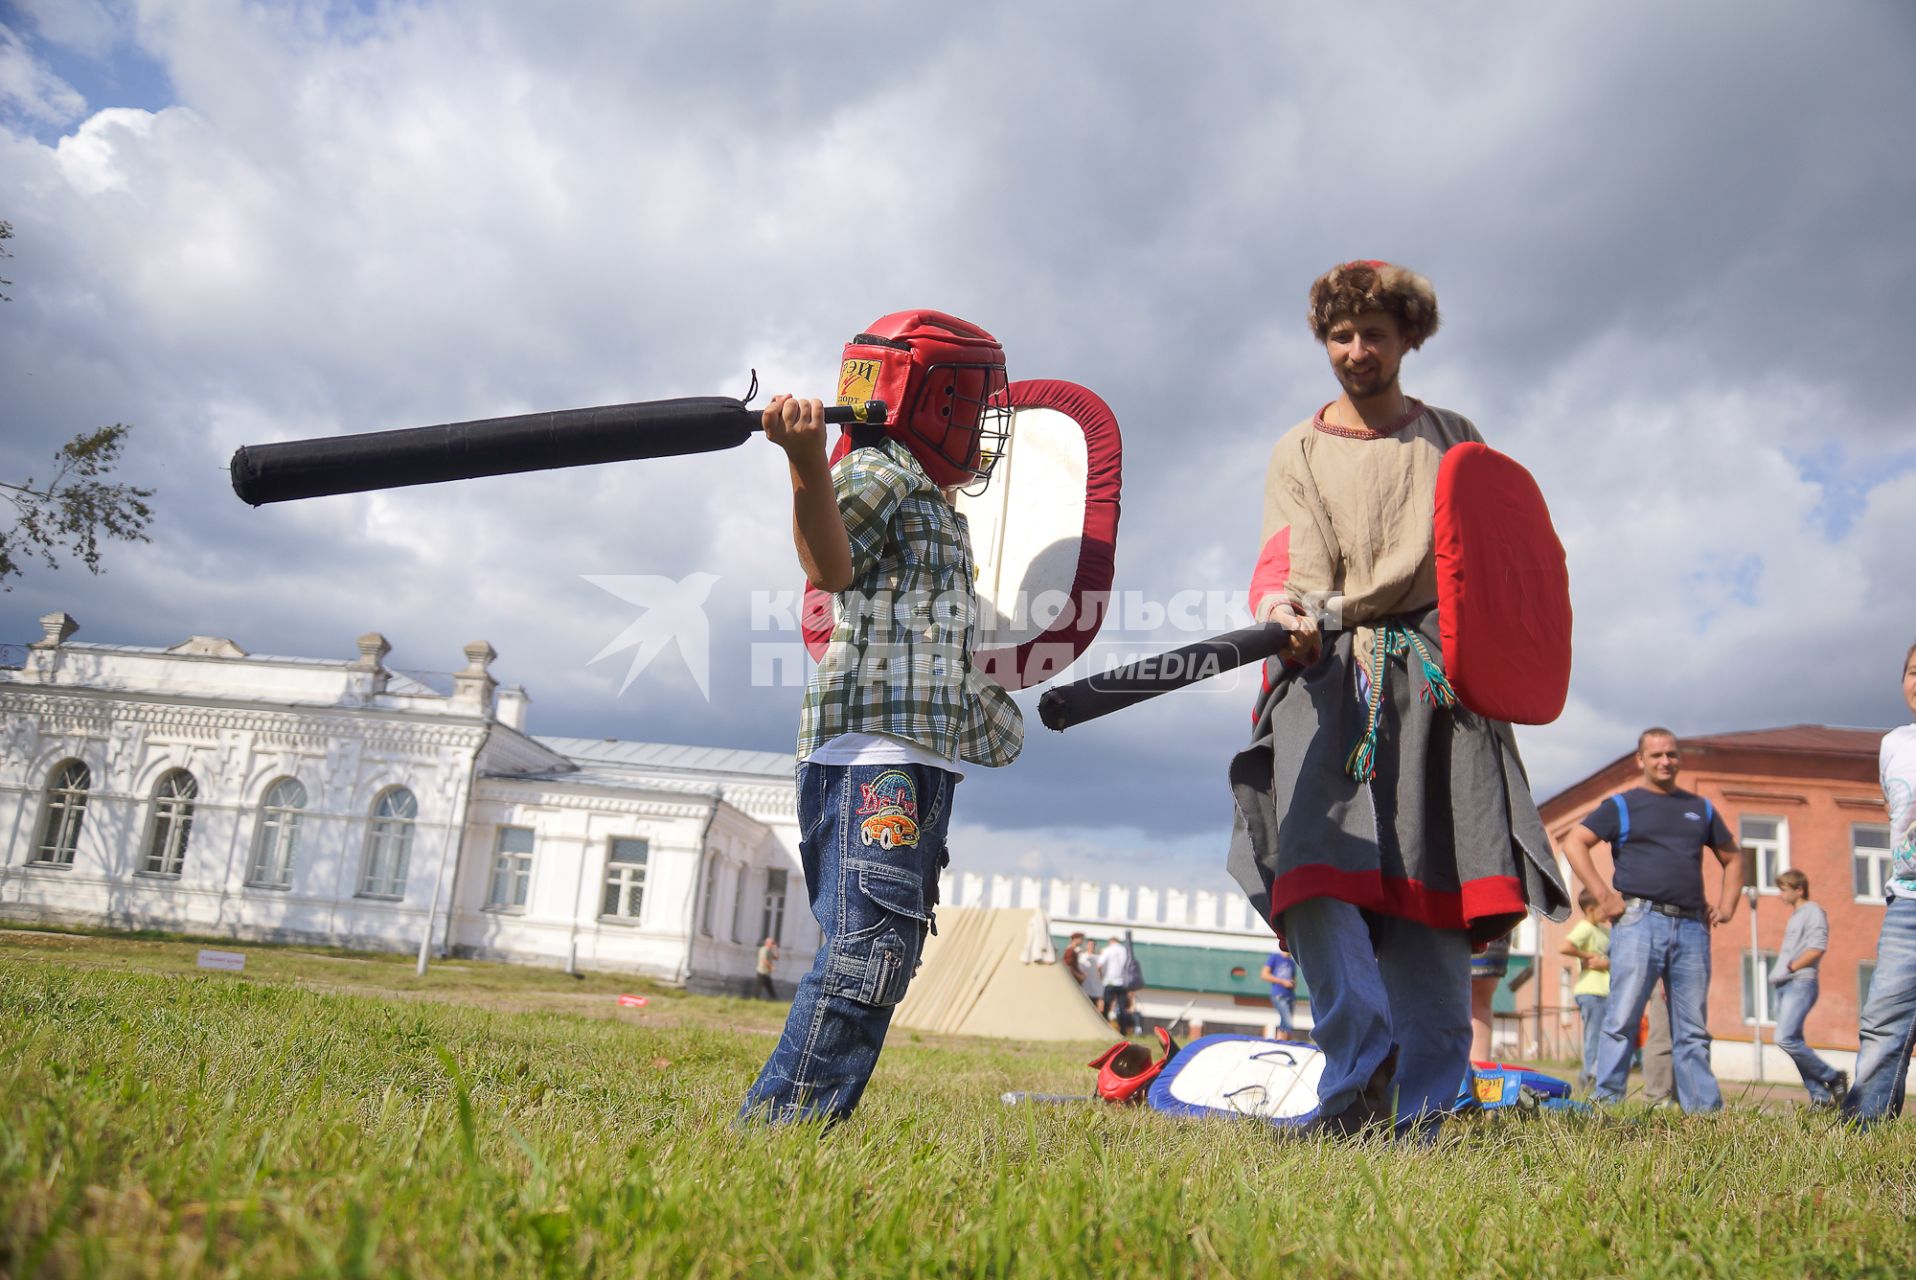 Фестиваль исторической реконструкции `Верхотурская таможня` в Верхотурье. Ребенок в защитном шлеме тренеруется в схватке на мечах.